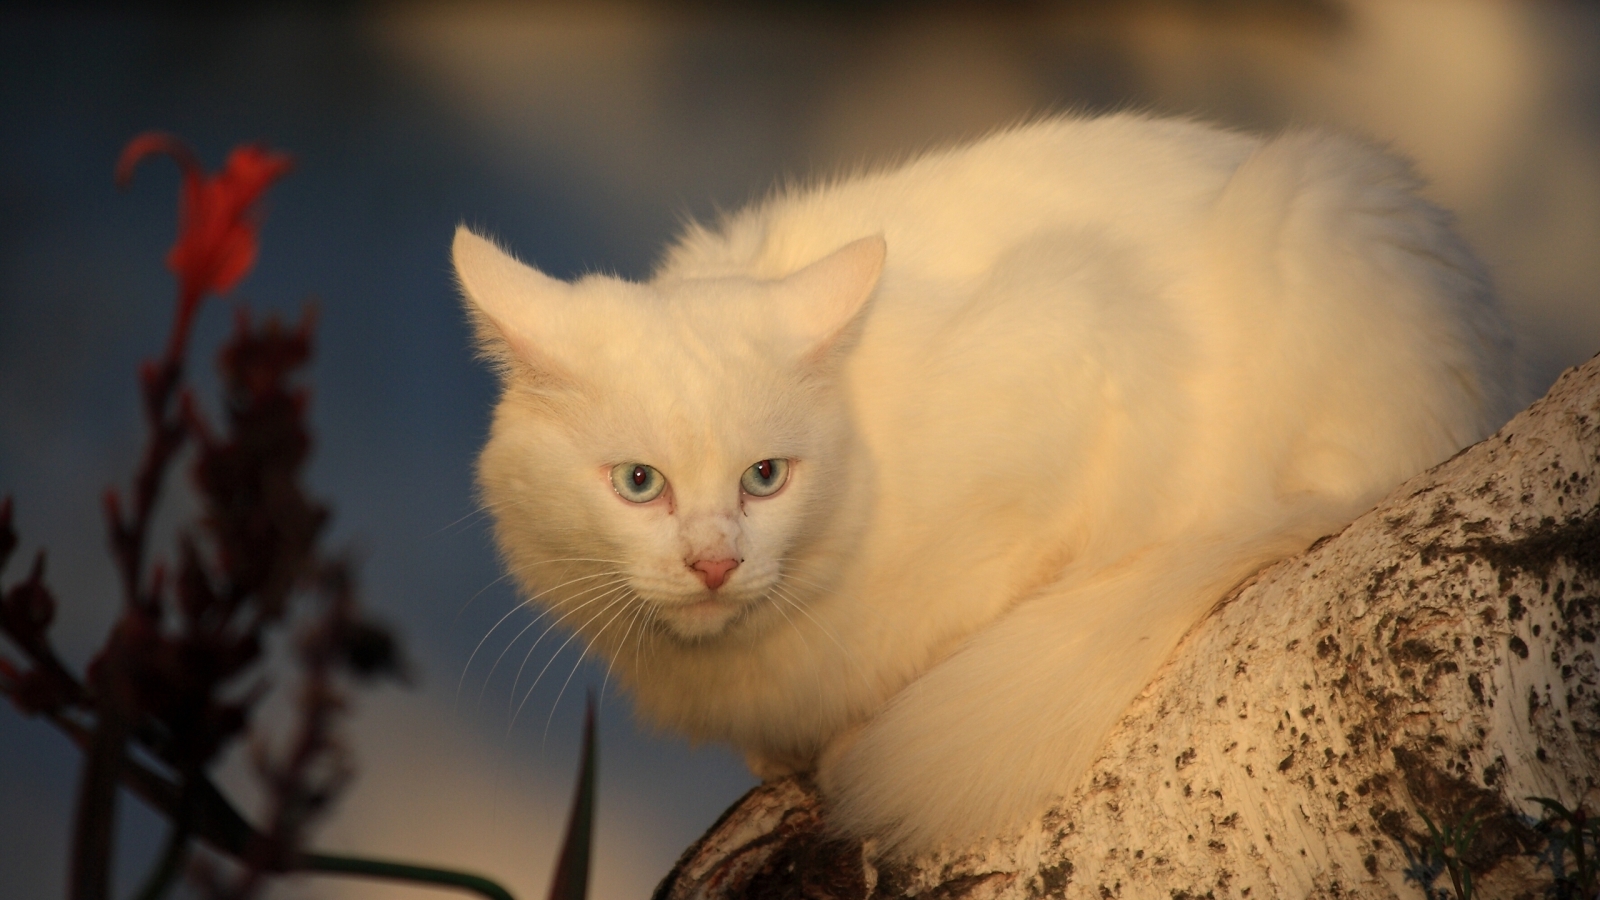 White Cat for 1600 x 900 HDTV resolution